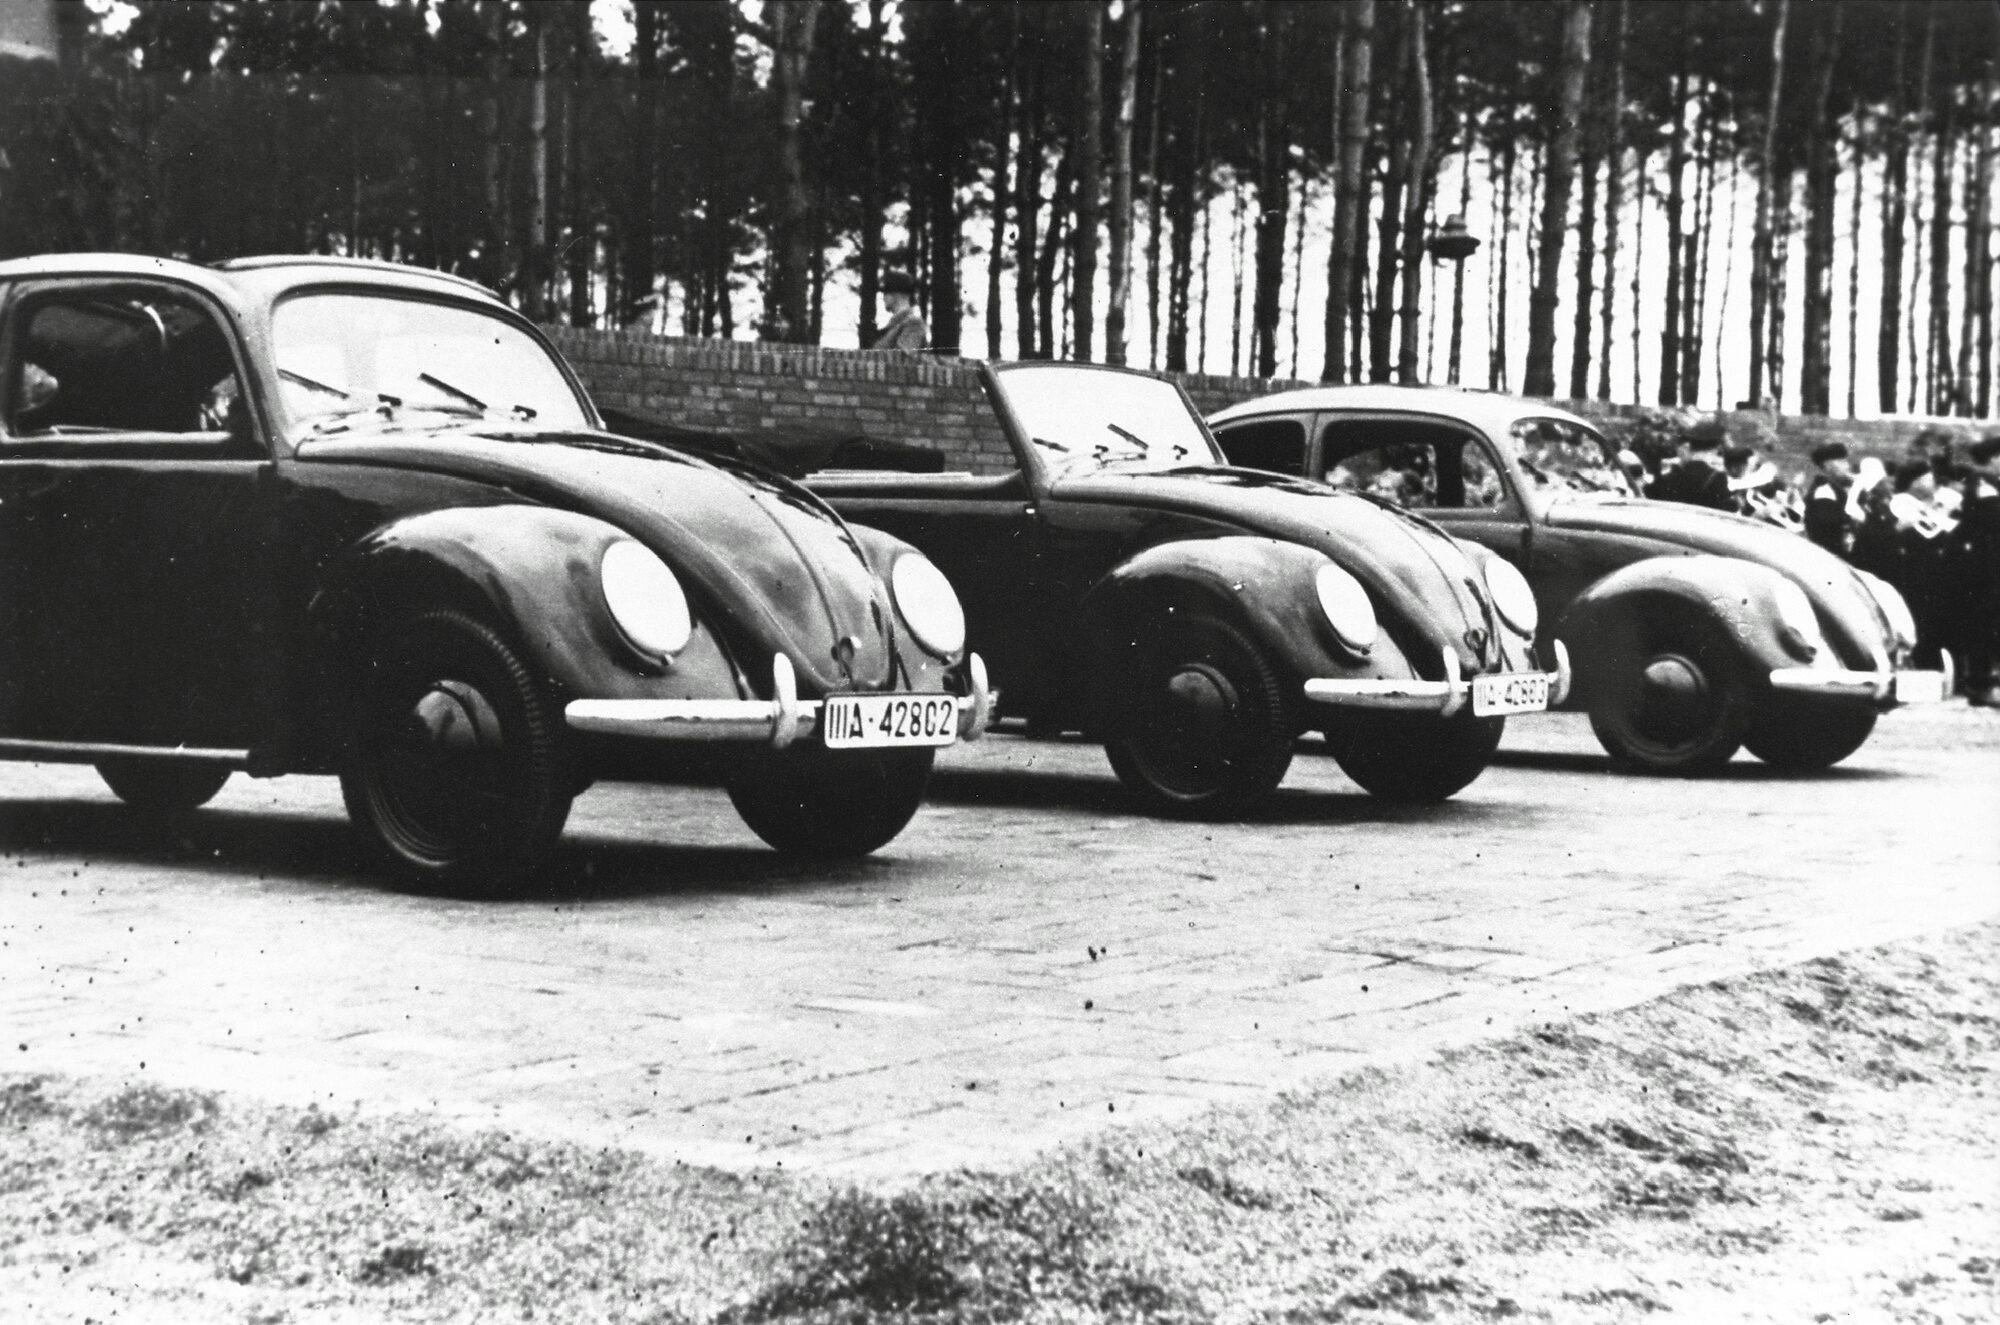 Early Volkswagen Beetles